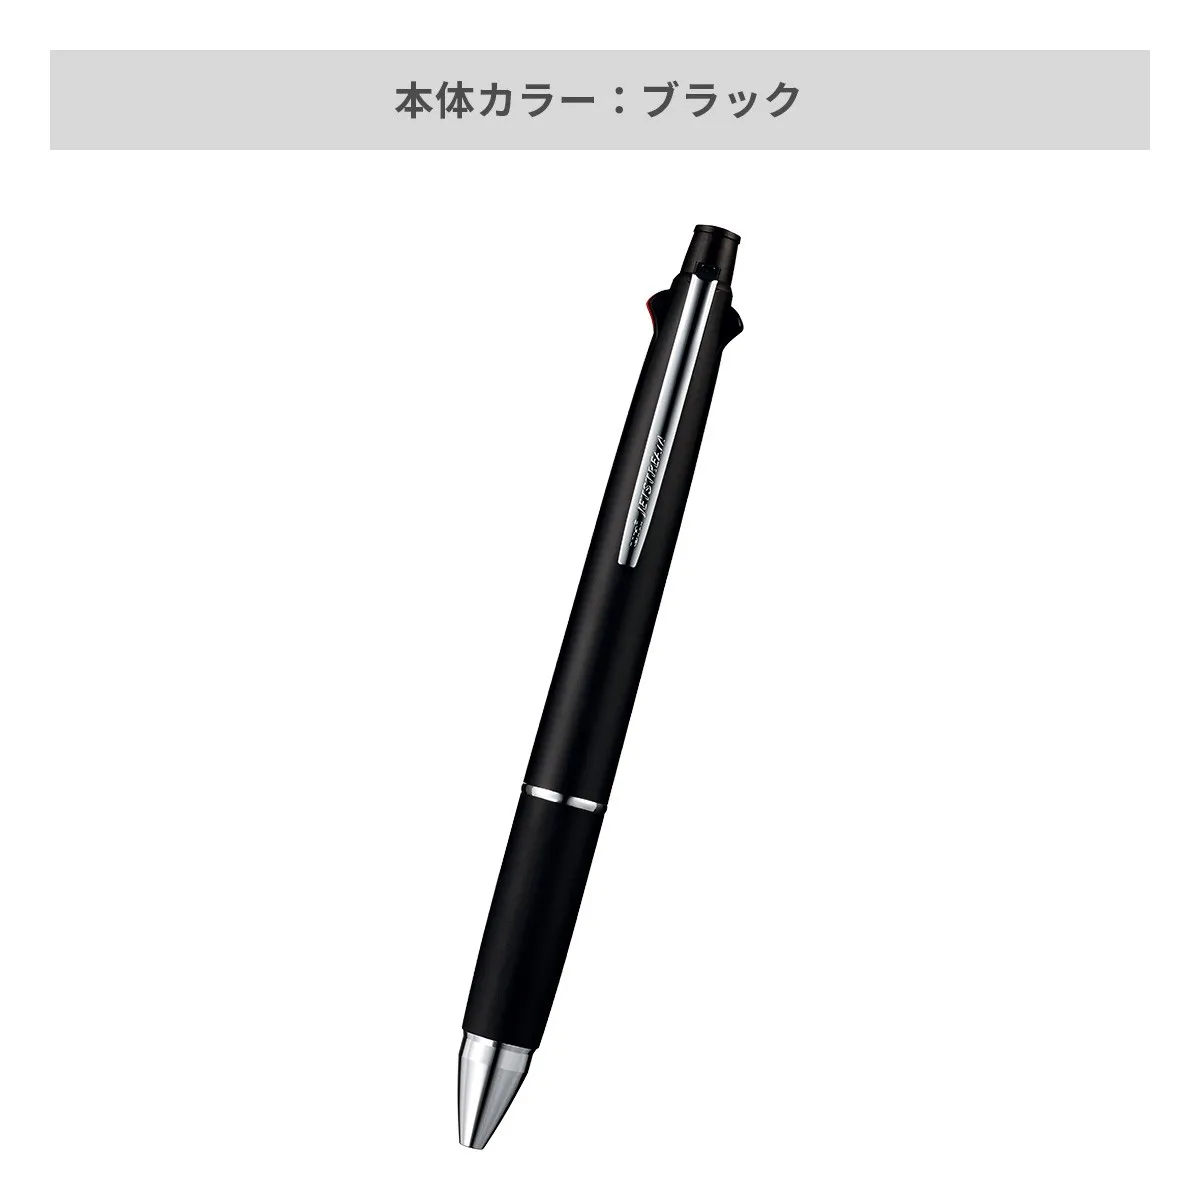 【短納期】三菱鉛筆 ジェットストリーム 多機能ペン 4&1 0.7mm【多機能ペン / レーザー彫刻】 画像4